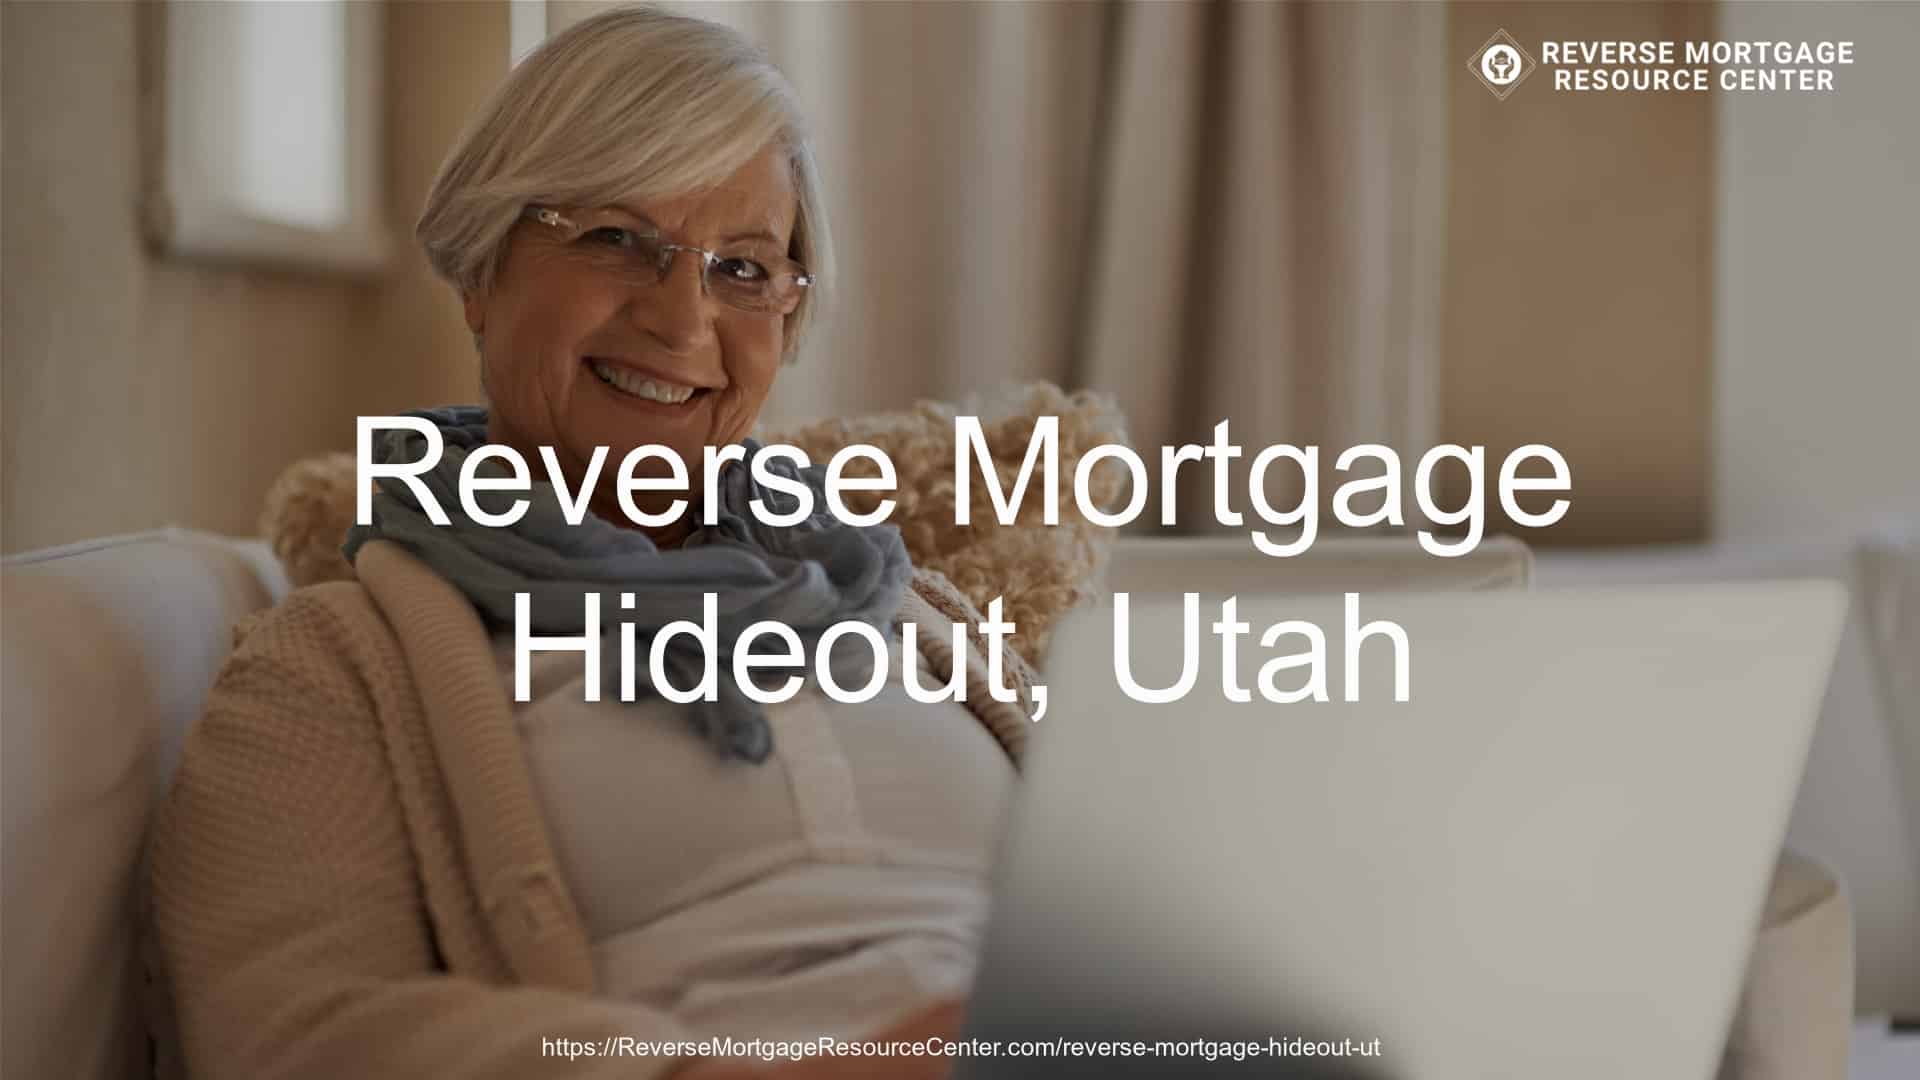 Reverse Mortgage Loans in Hideout Utah